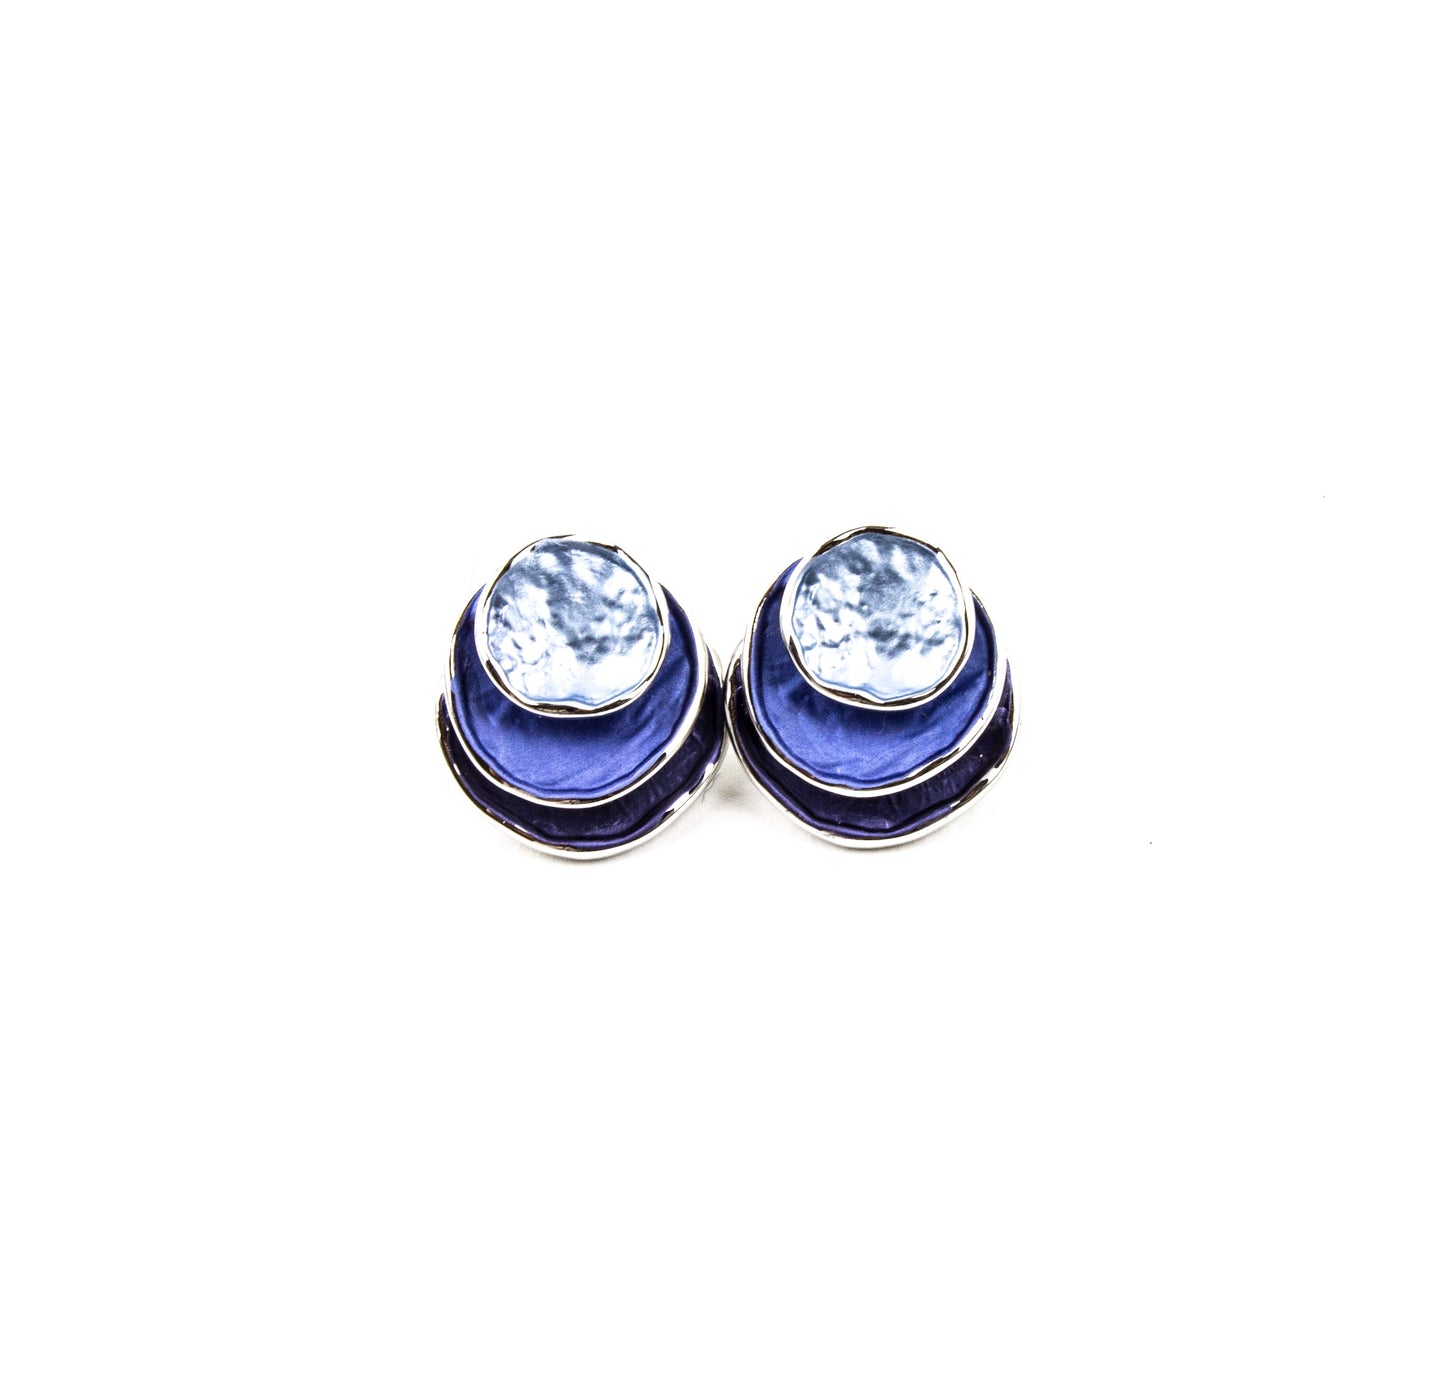 Eclissi earrings